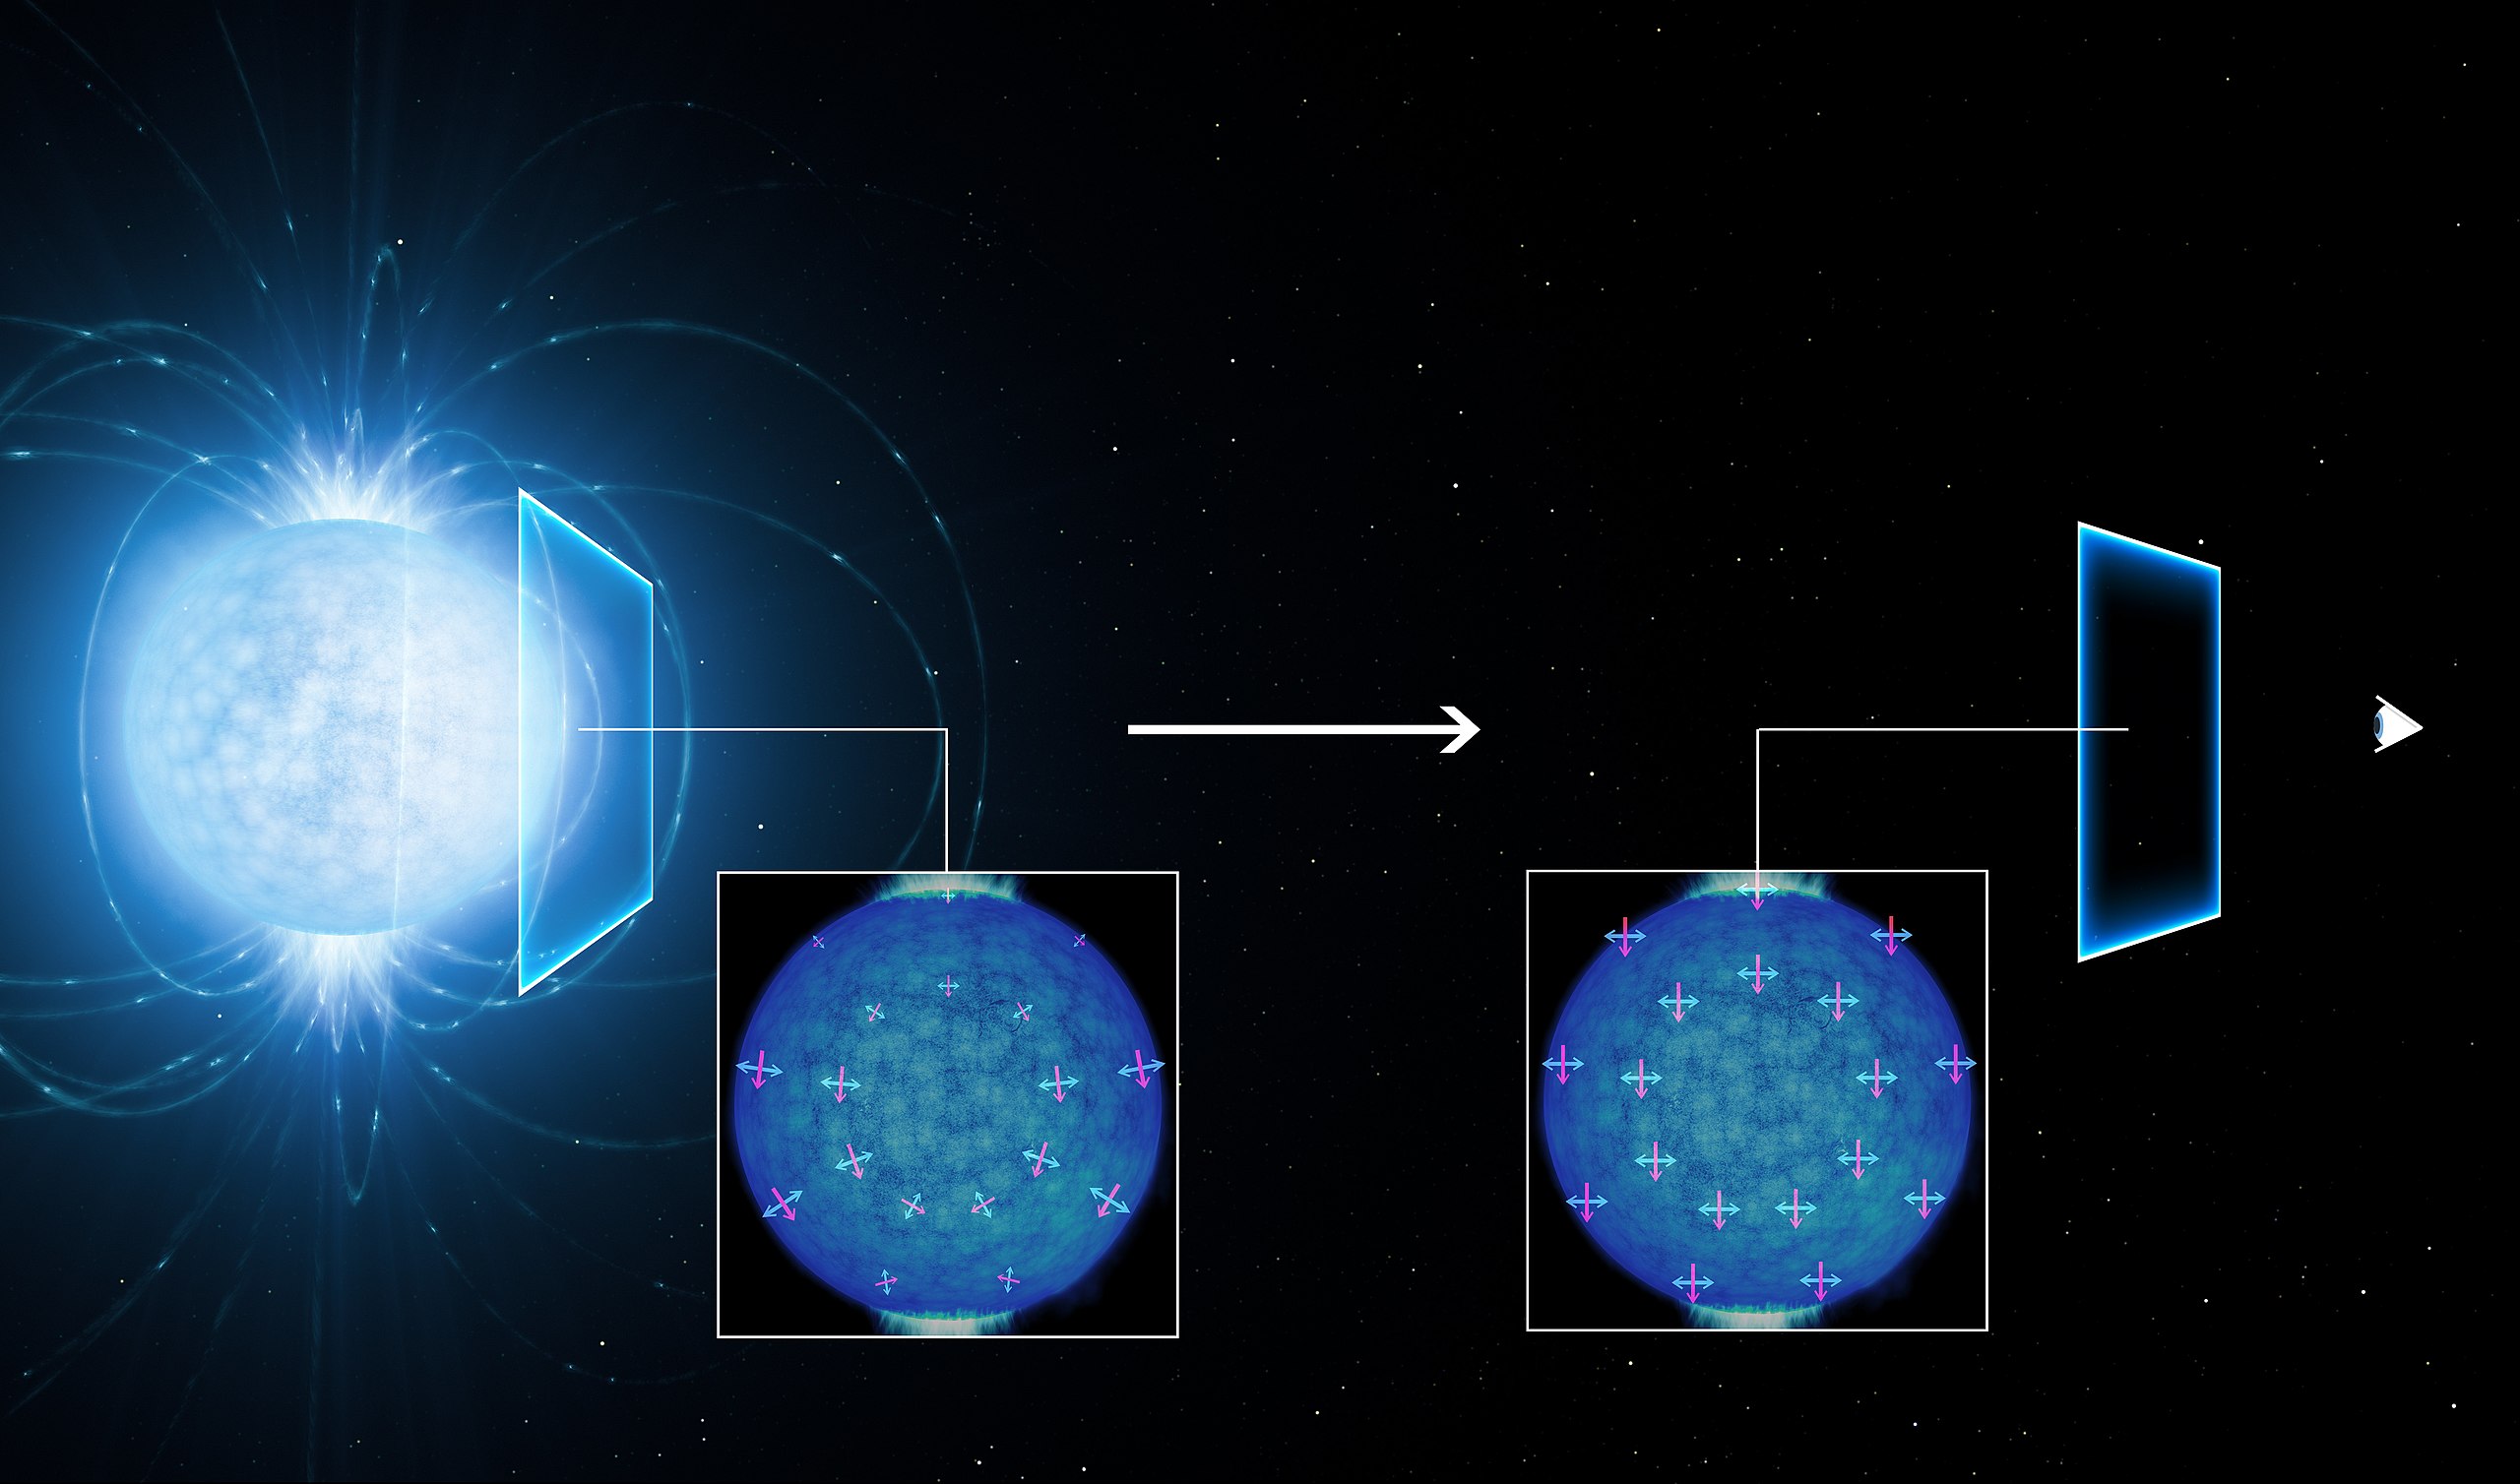 Изображение линейной поляризации излучения нейтронной звезды в процессе прохождения через вакуум до наблюдателя Земли